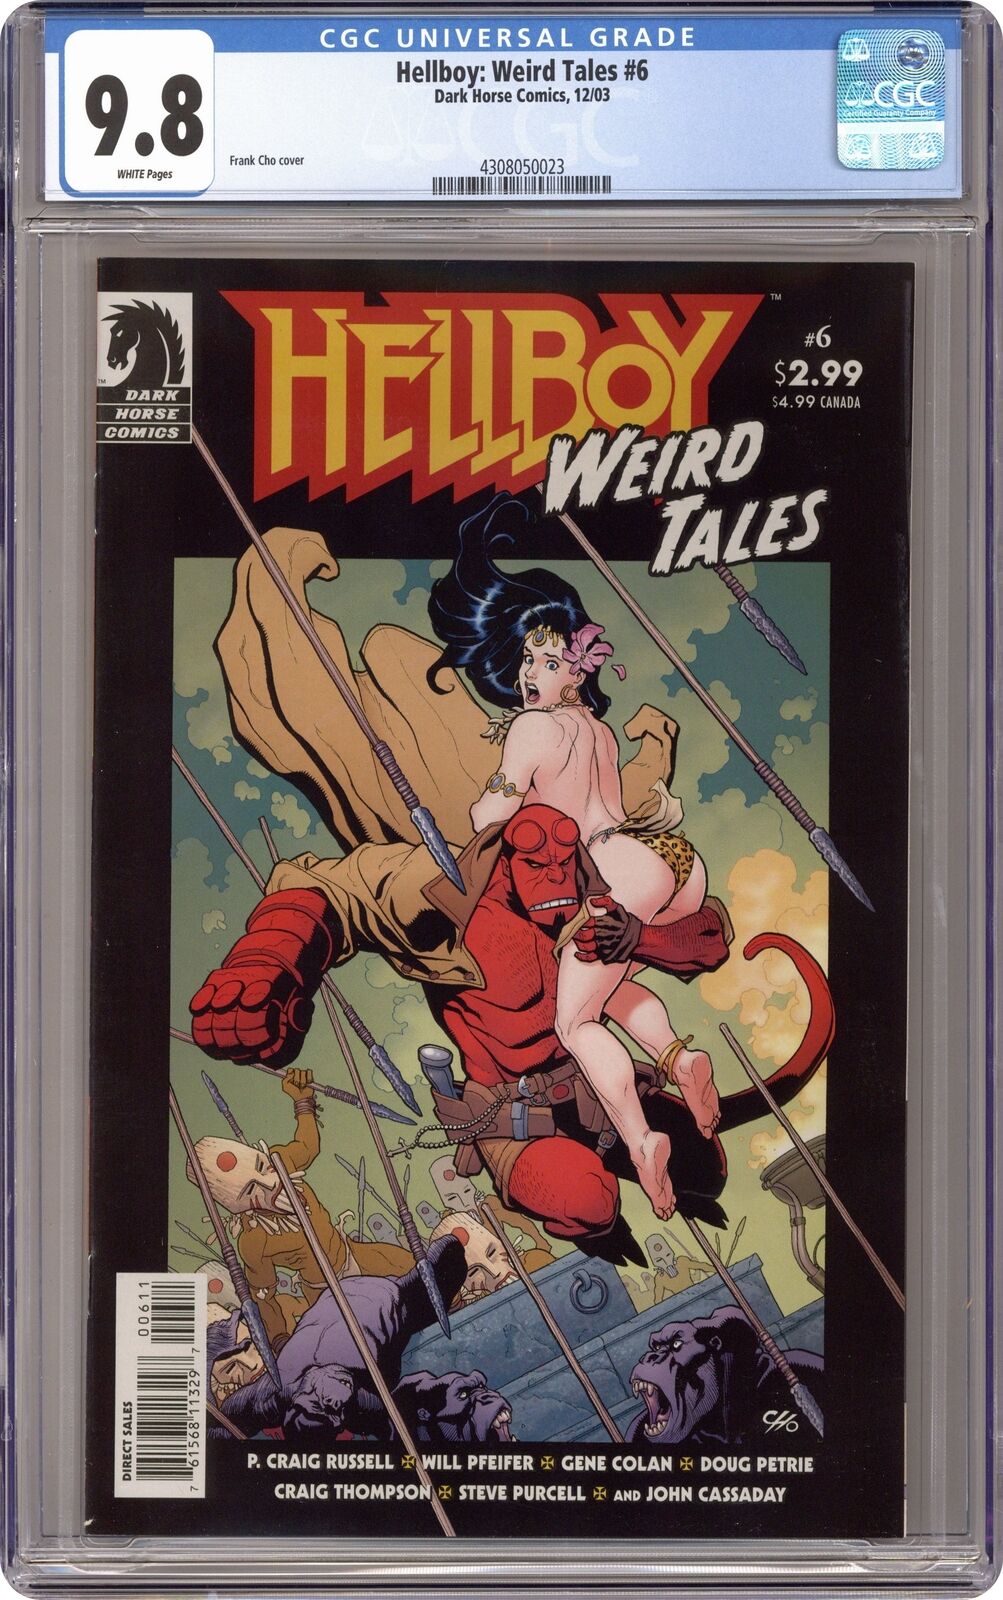 Hellboy Weird Tales #6 CGC 9.8 2003 4308050023